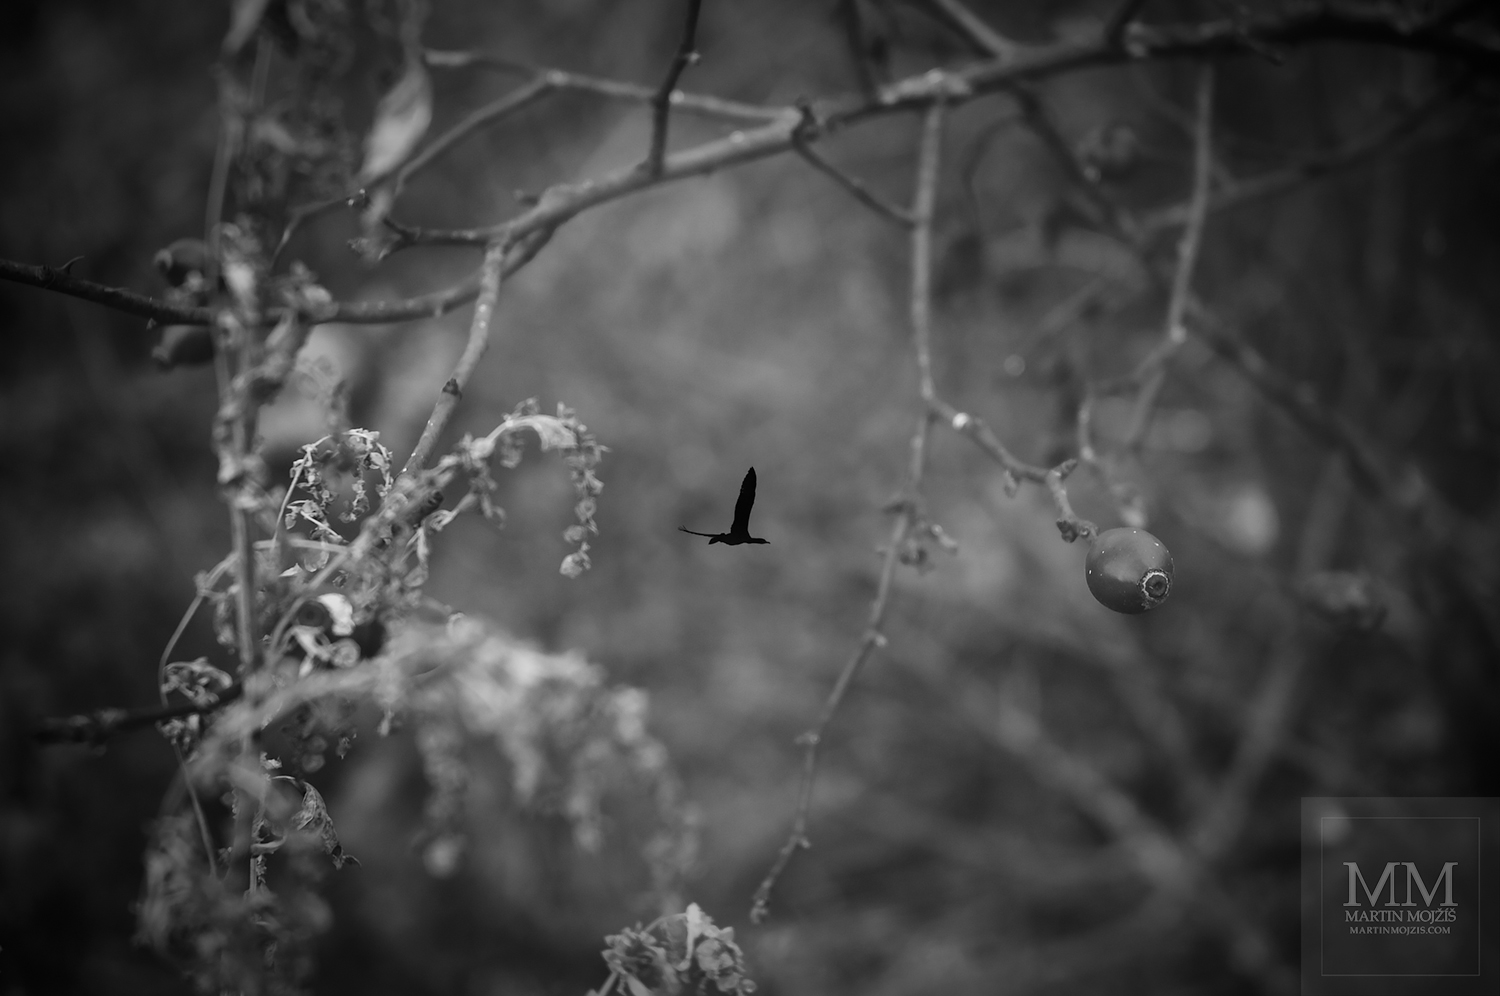 Prolnuté větve stromů a ptáci. Umělecká černobílá fotografie Martina Mojžíše s názvem V PODZIMU.